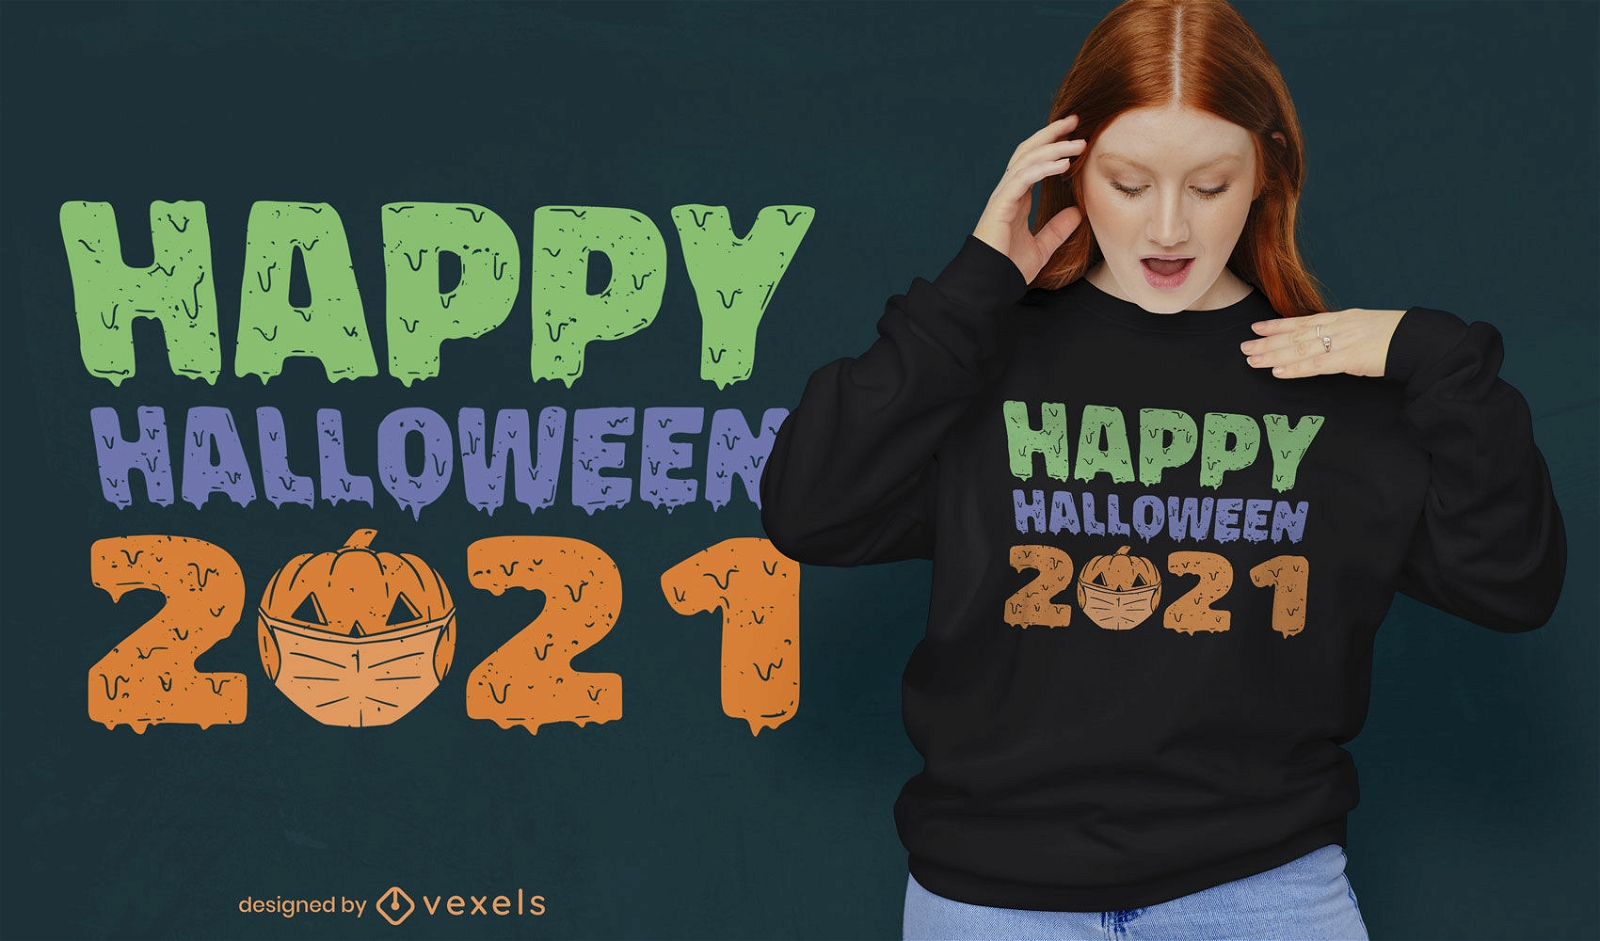 Halloween 2021 t-shirt design